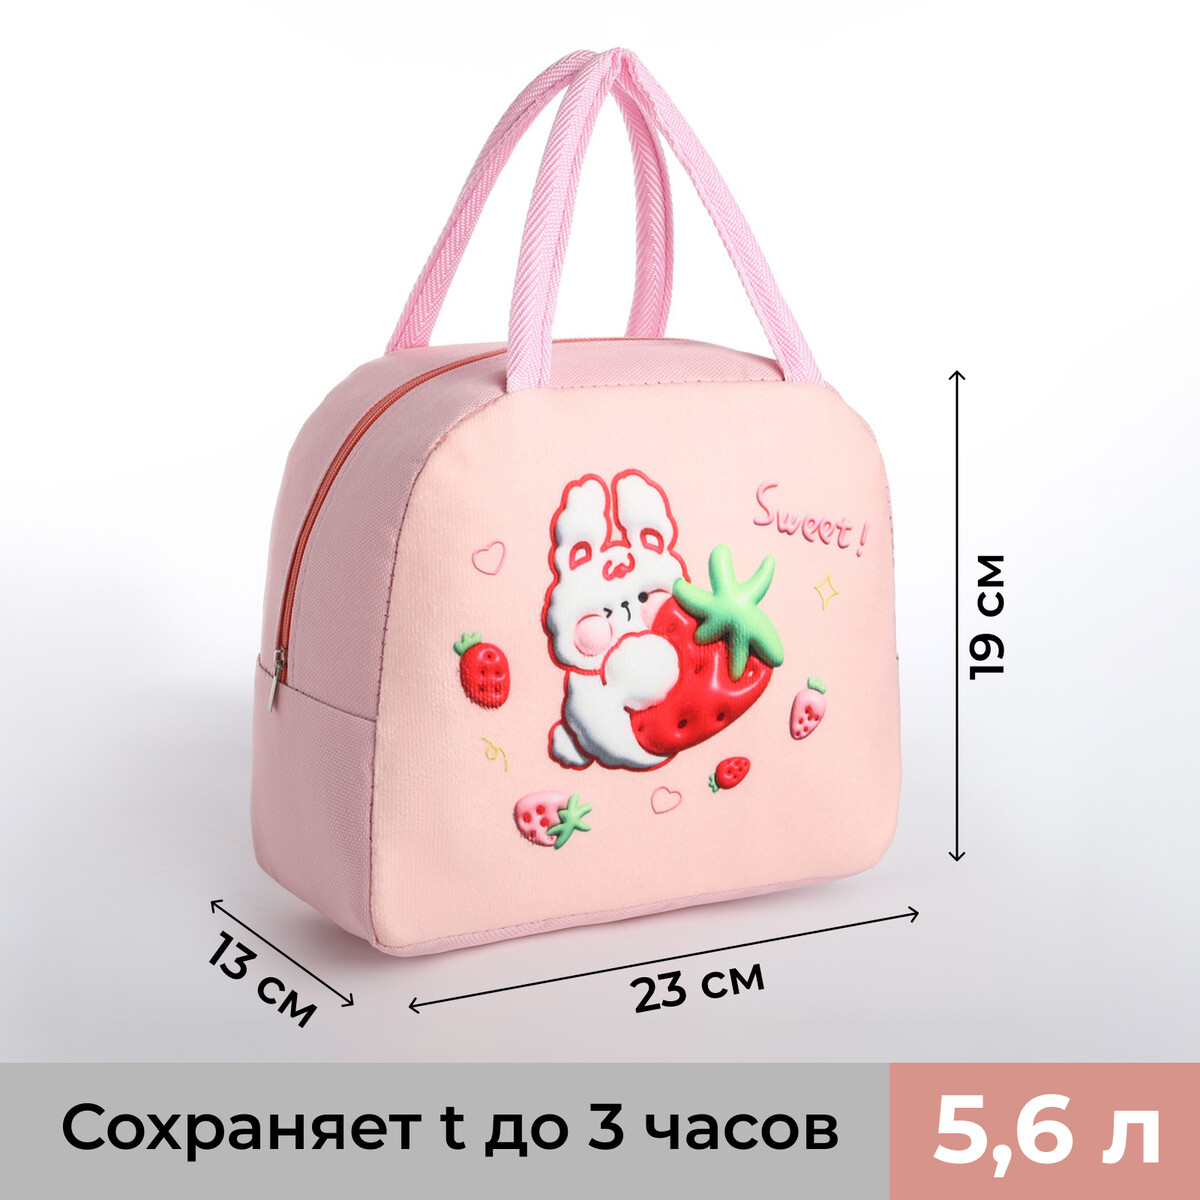 Термосумка на молнии, 5.6 л, цвет розовый рюкзак женский с термокарманом термосумка портфель розовый